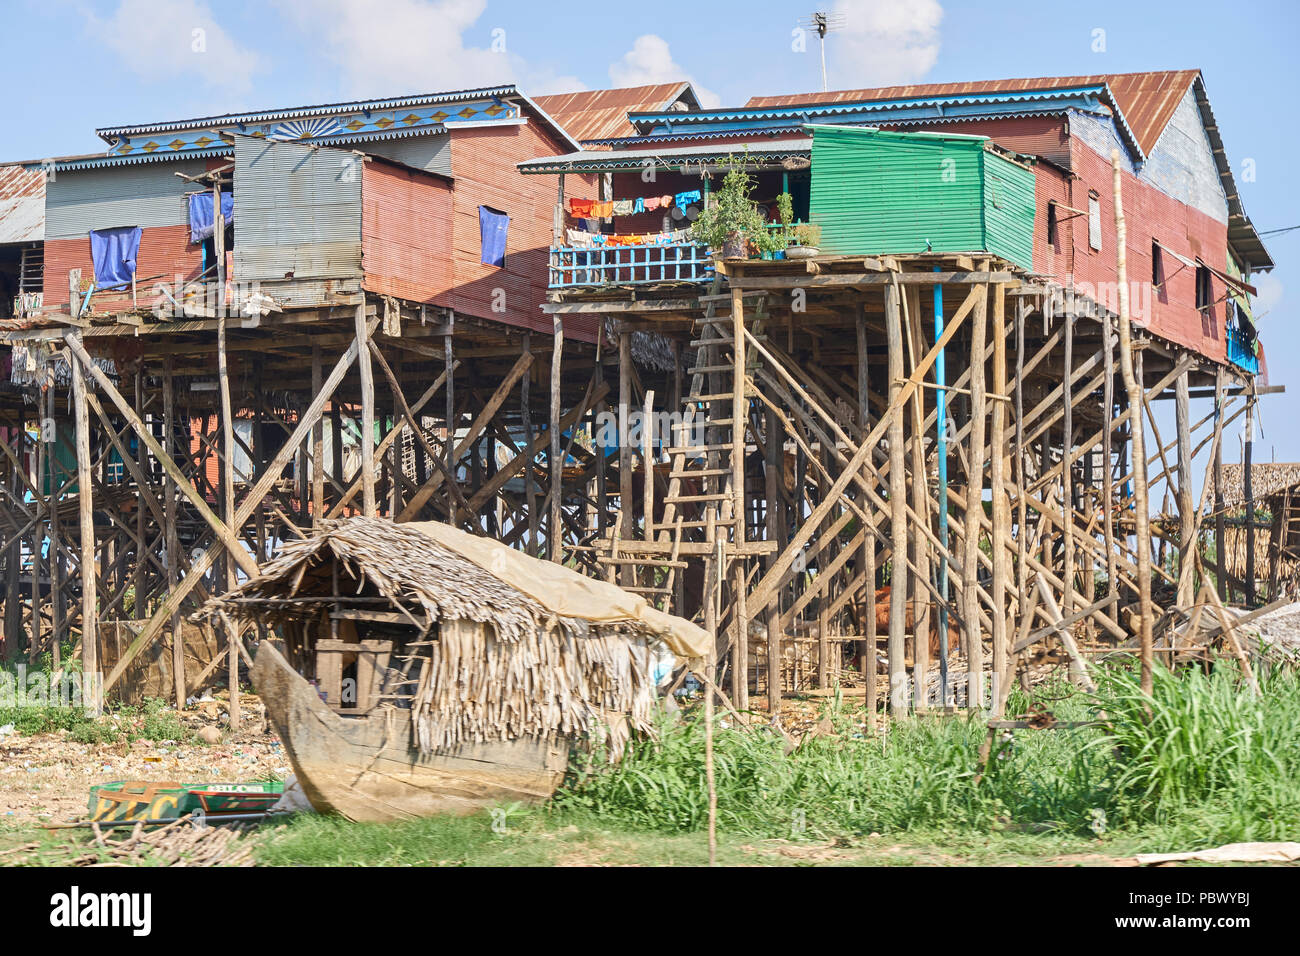 Stilt houses on Tonle Sap lake in Cambodia Stock Photo